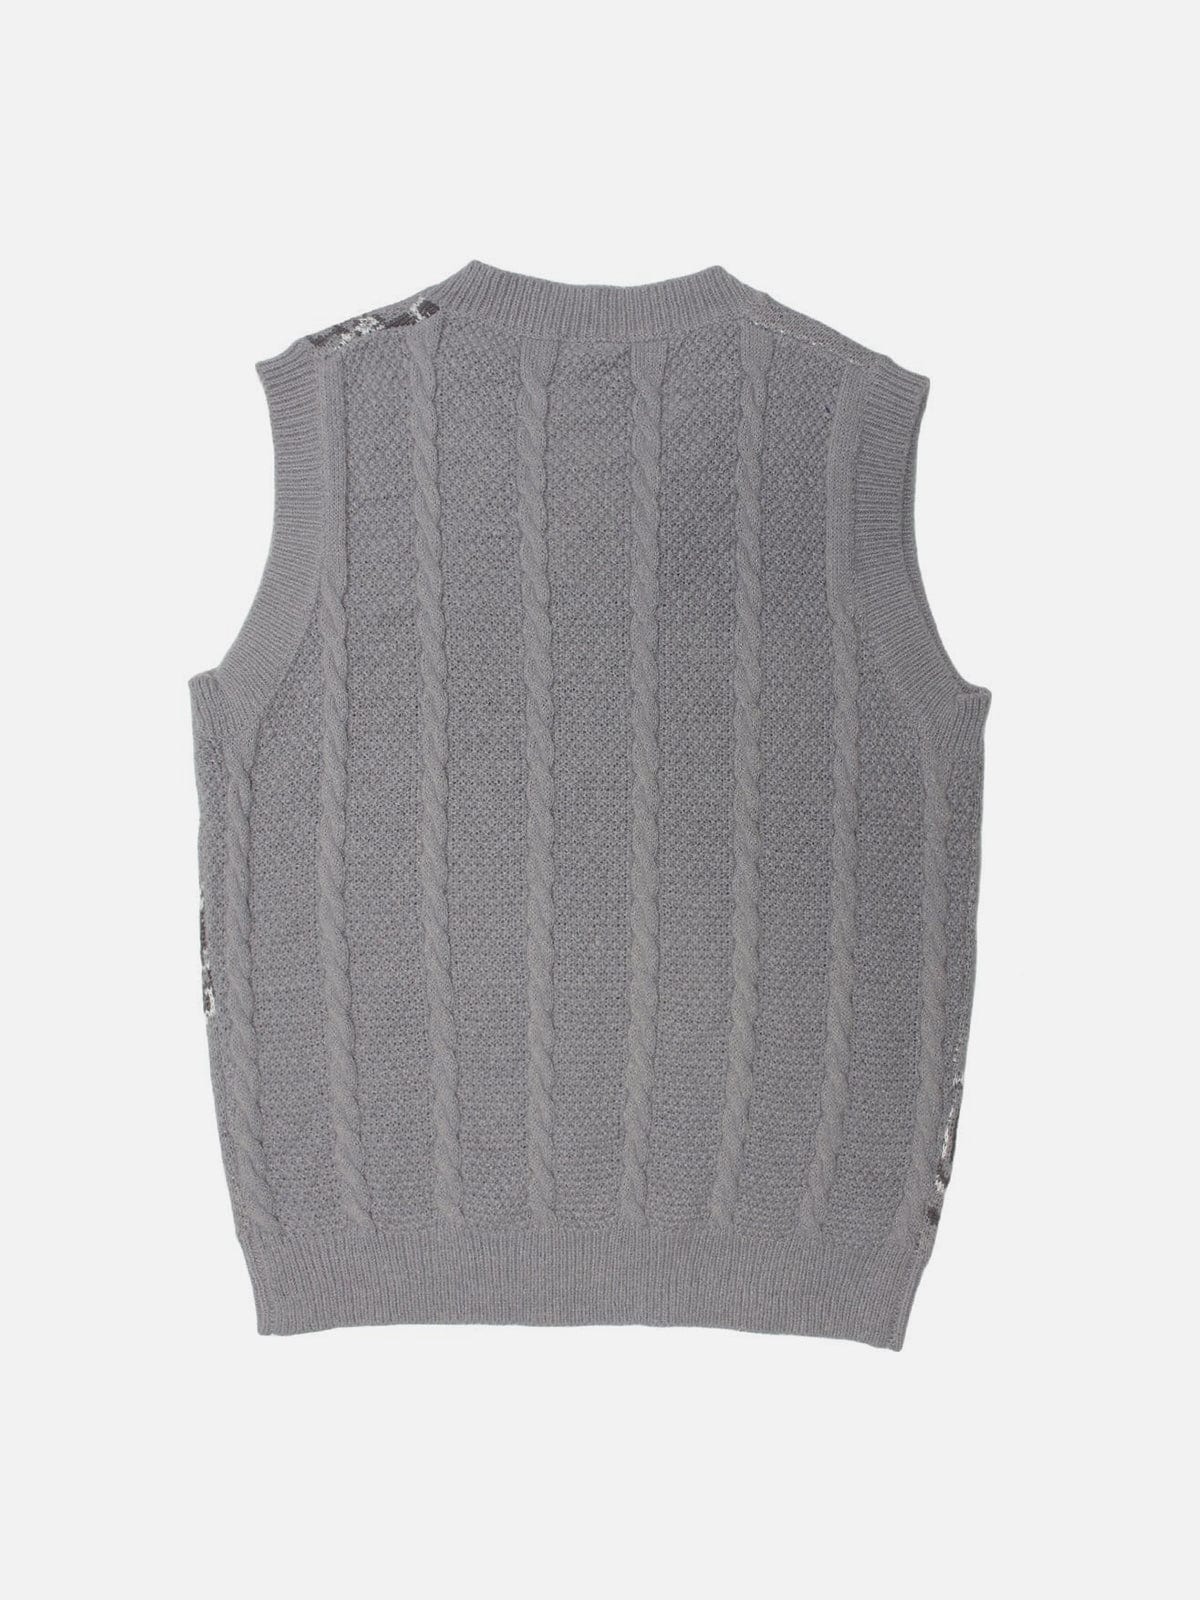 Broken Love Print Sweater Vest